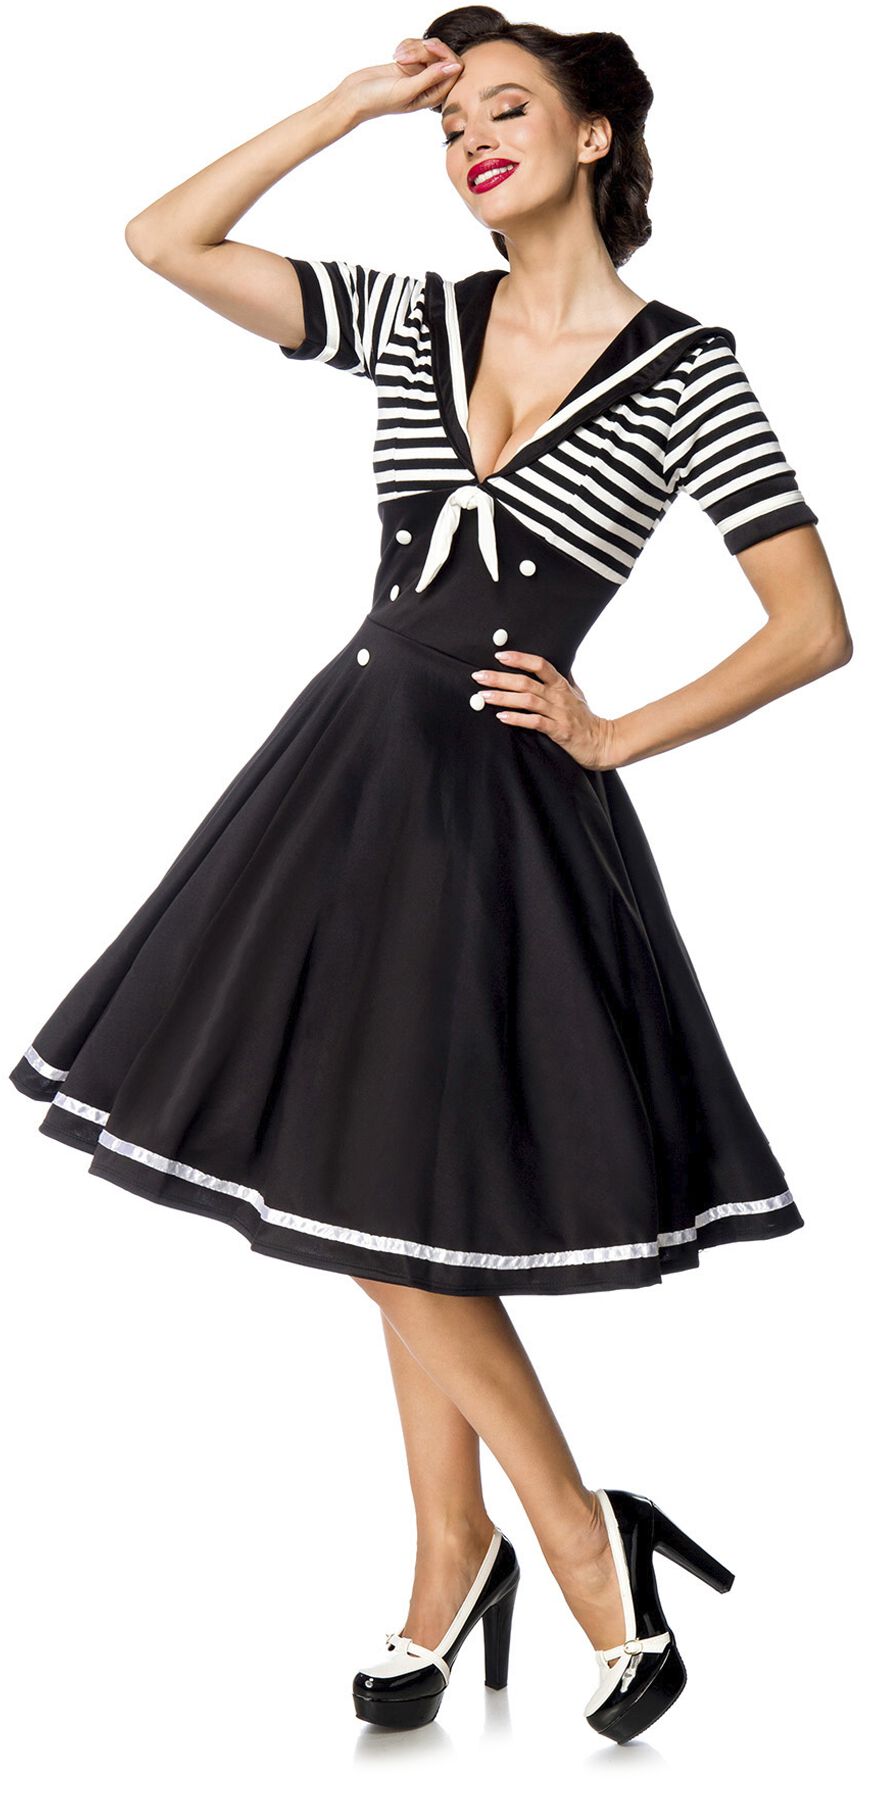 Belsira - Rockabilly Kleid knielang - Swing-Kleid im Marinelook - S bis 4XL - für Damen - Größe M - schwarz/weiß